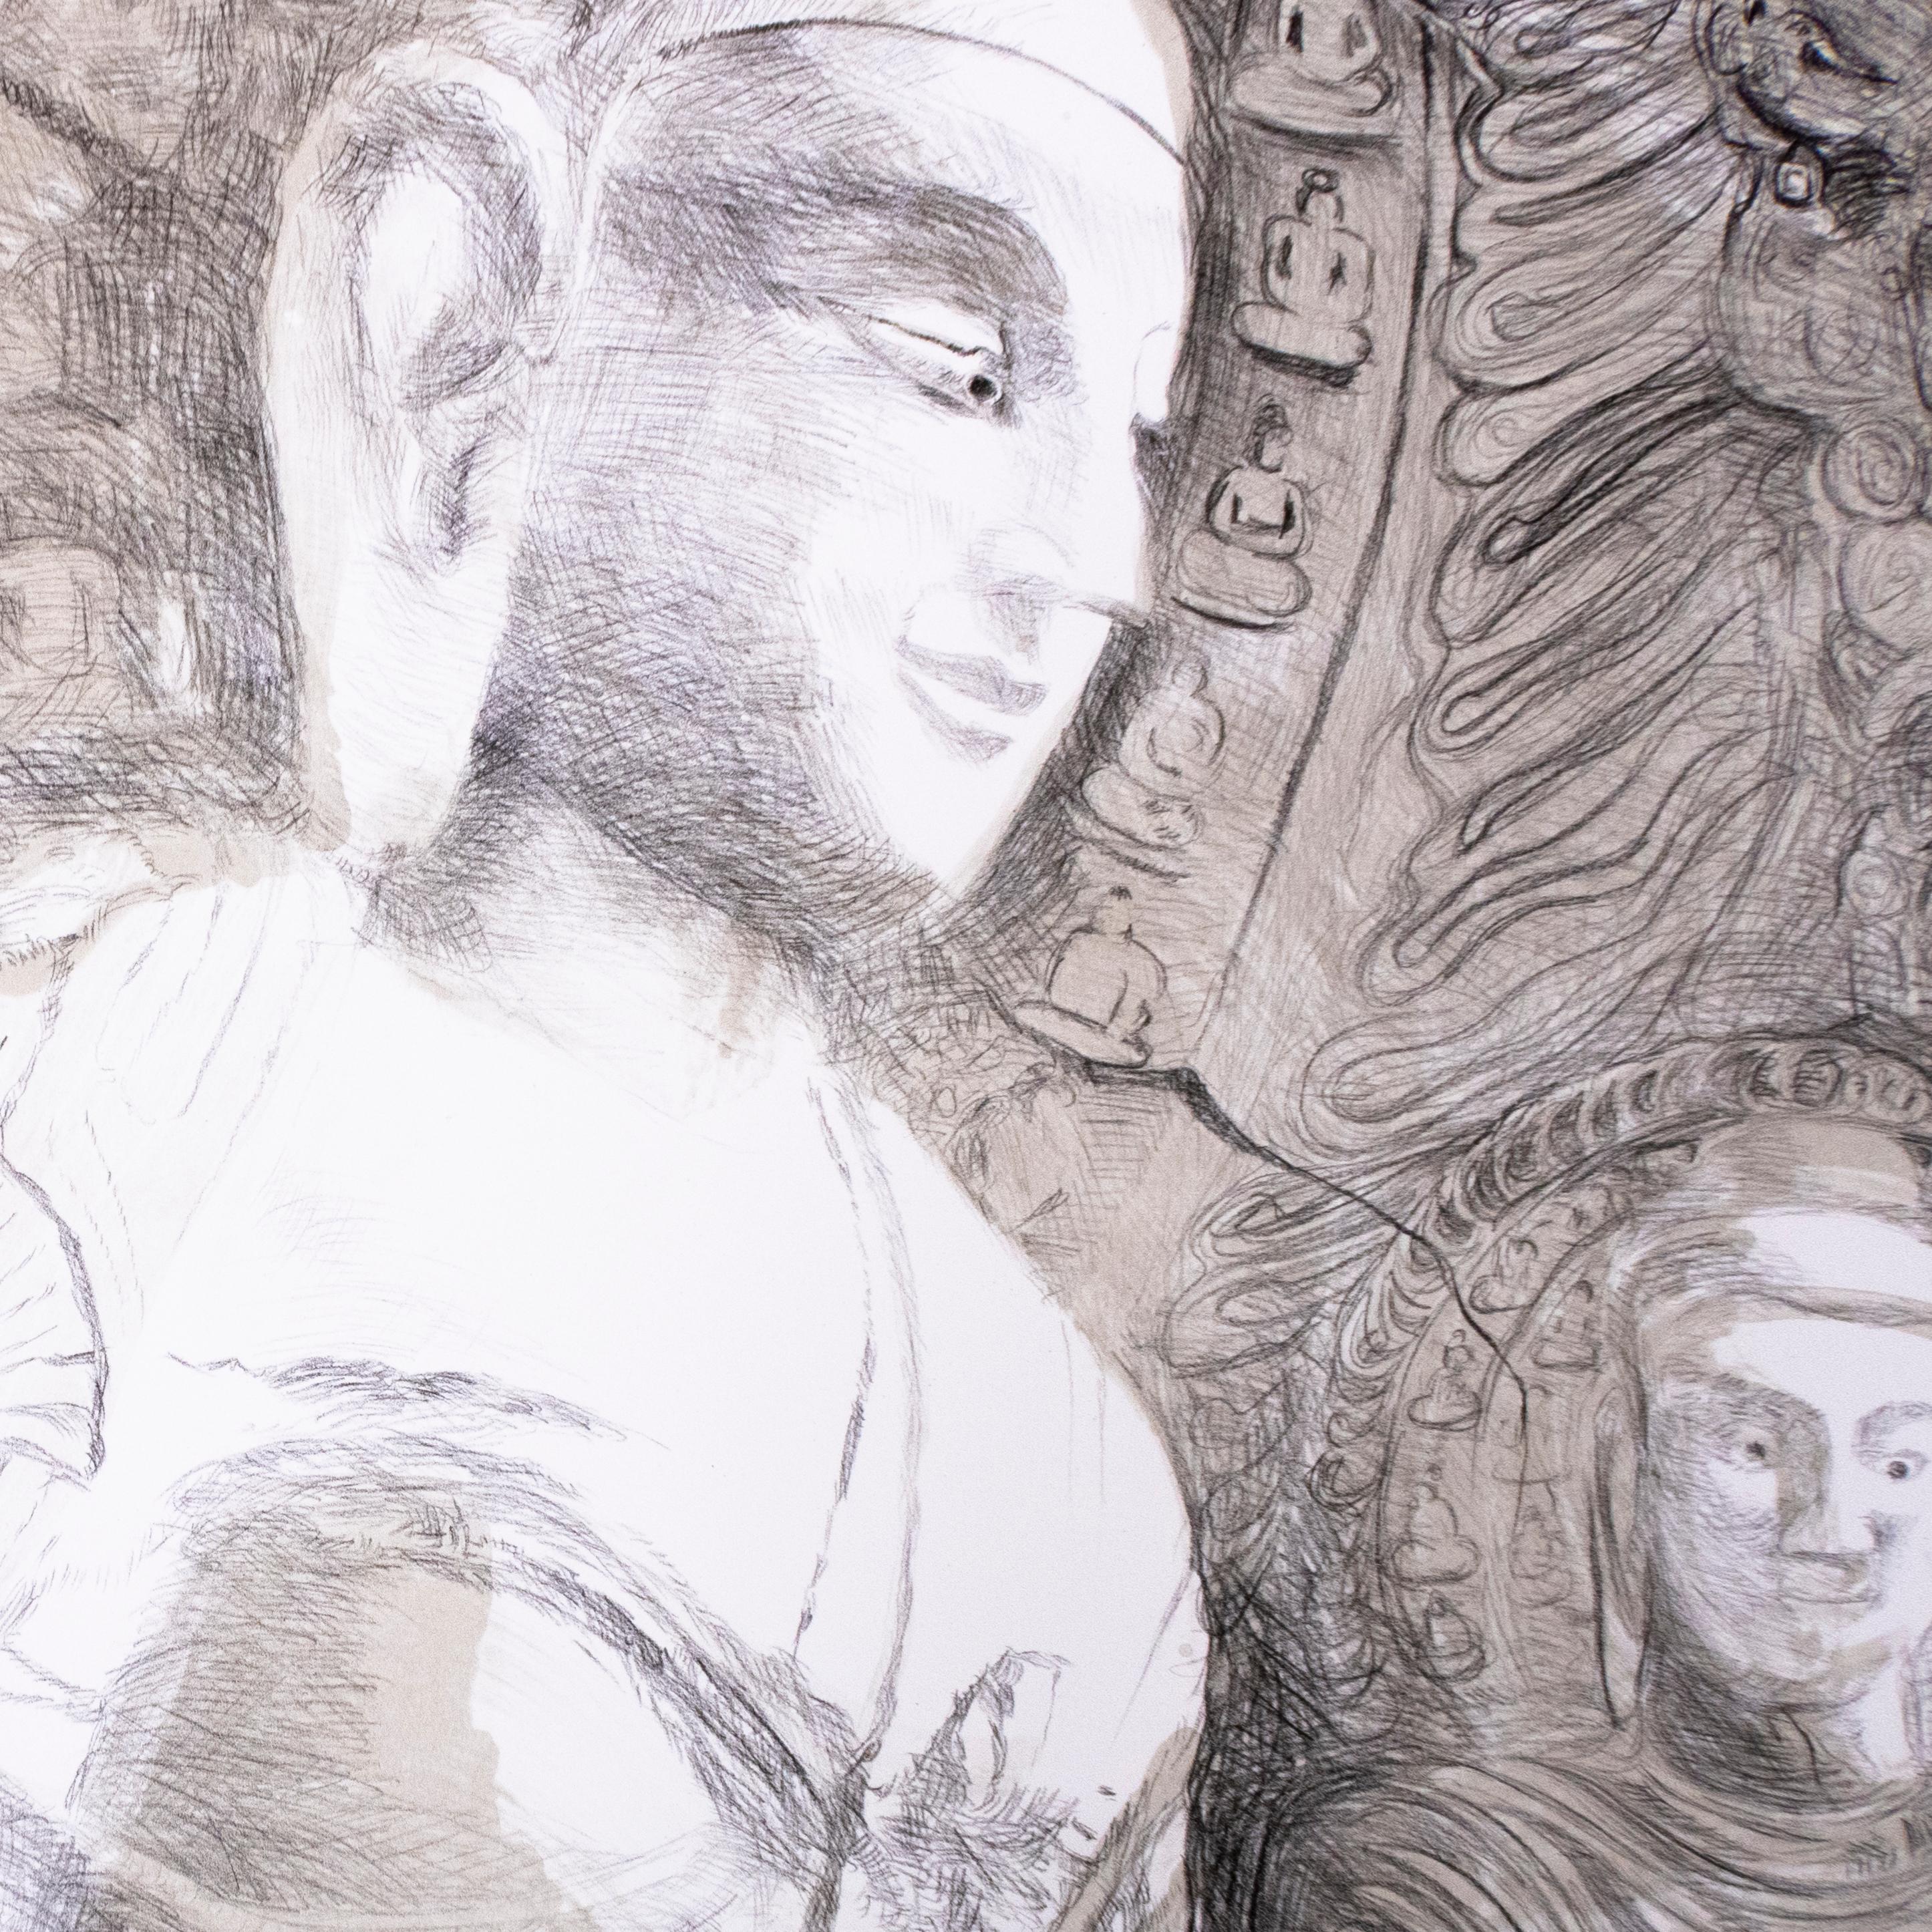 Ce paysage de falaise zen minimaliste en noir et blanc à grande échelle représente des bouddhas avec des mains en mudra en Inde. Des divinités en position de yoga du lotus avec des motifs floraux et végétaux et des dessins sculptés dans la pierre et